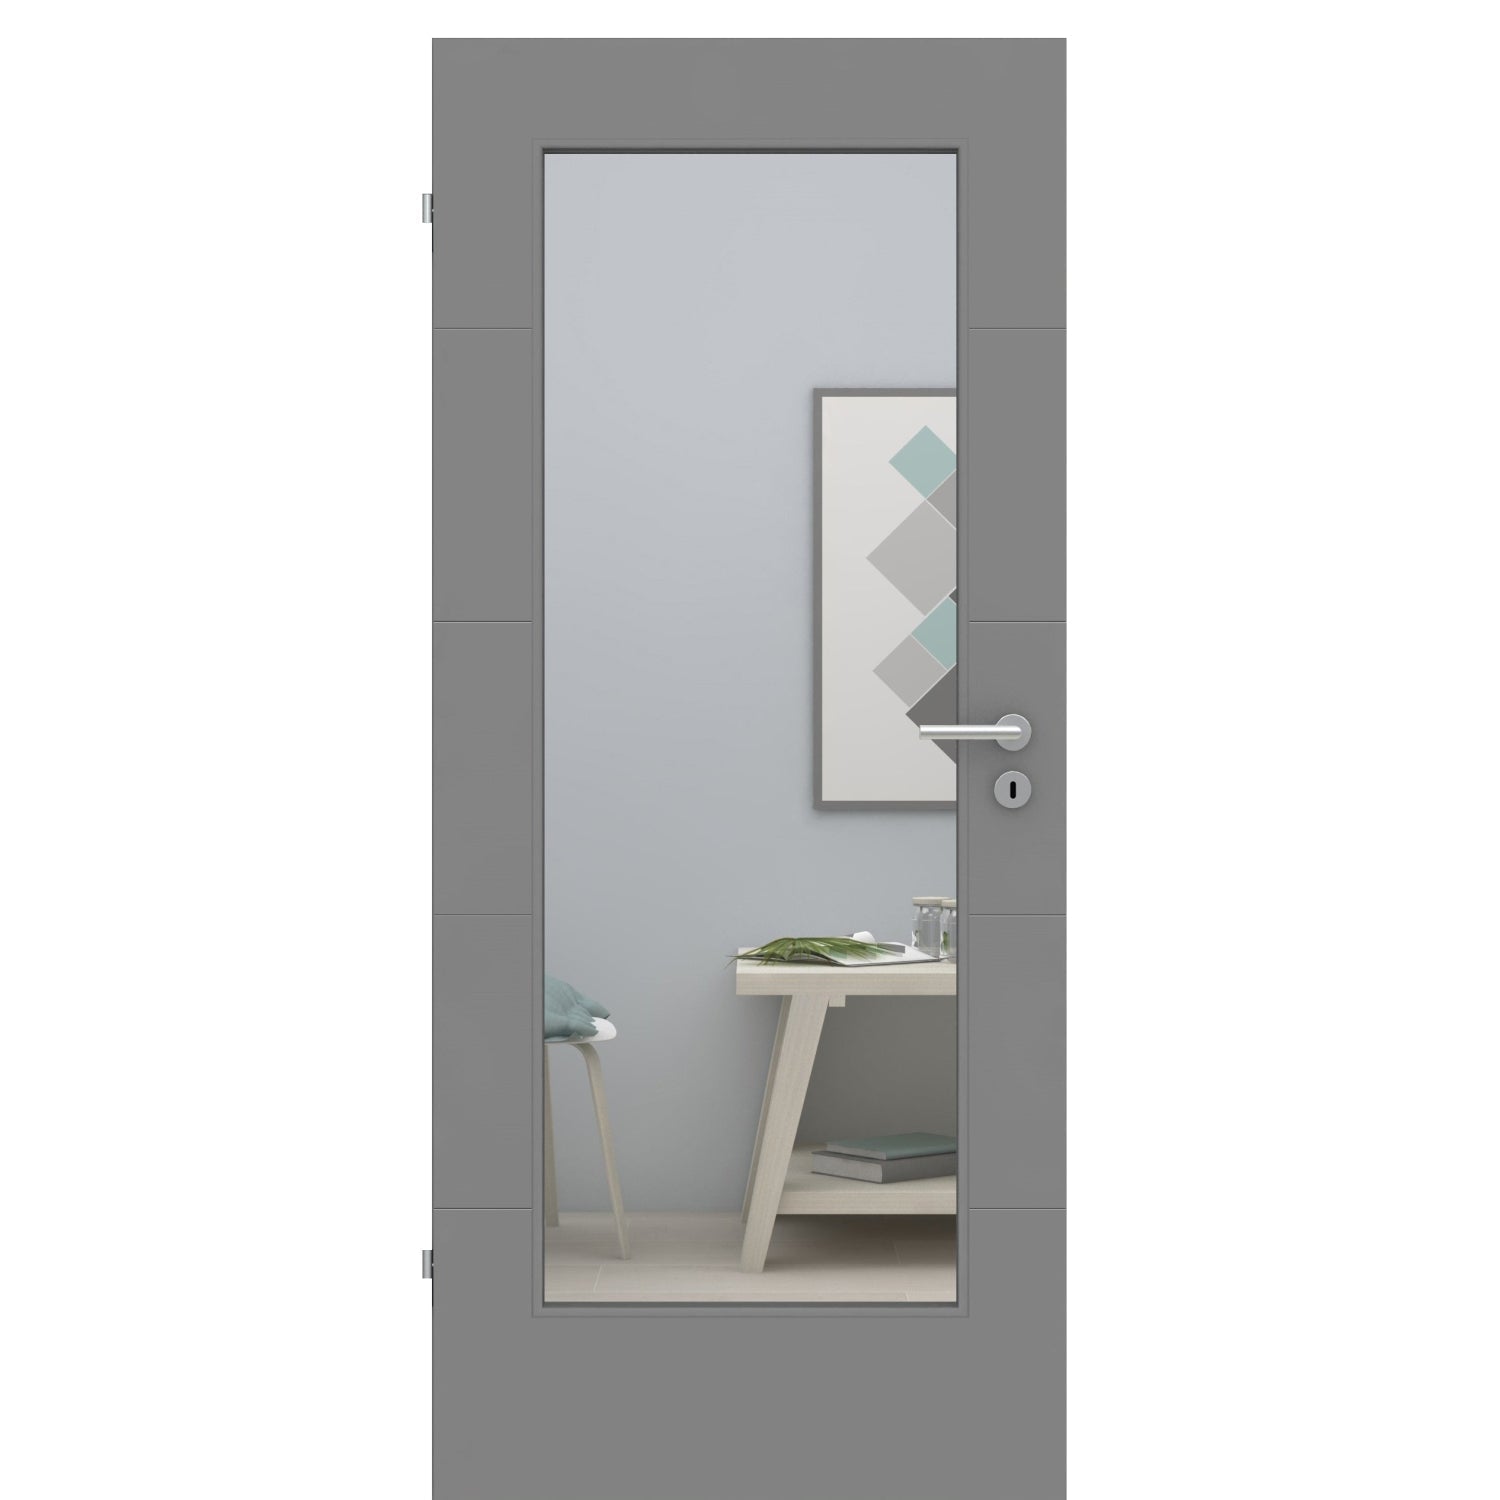 Zimmertür mit Lichtausschnitt grau 4 Rillen quer Designkante - Modell Designtür Q47LA